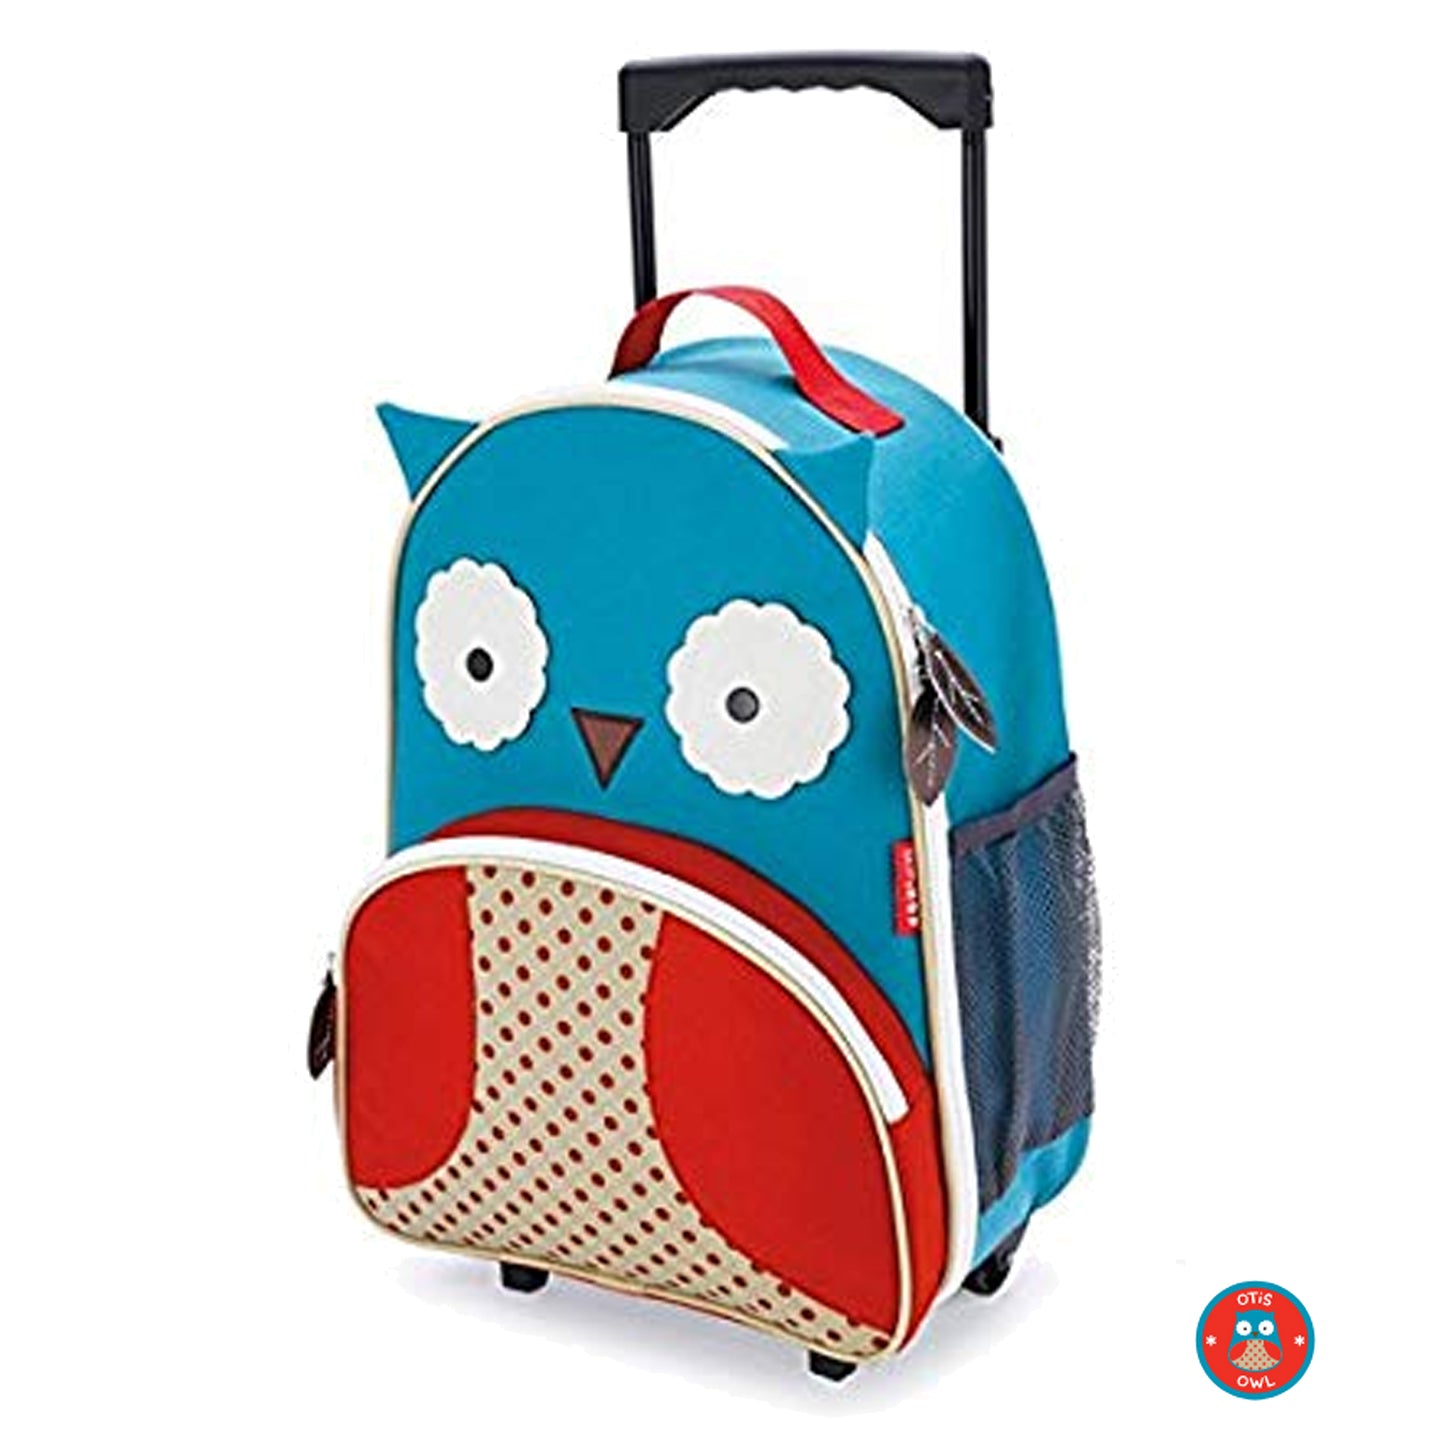 Zoo Kids Rolling Luggage Otis - Owl - BambiniJO